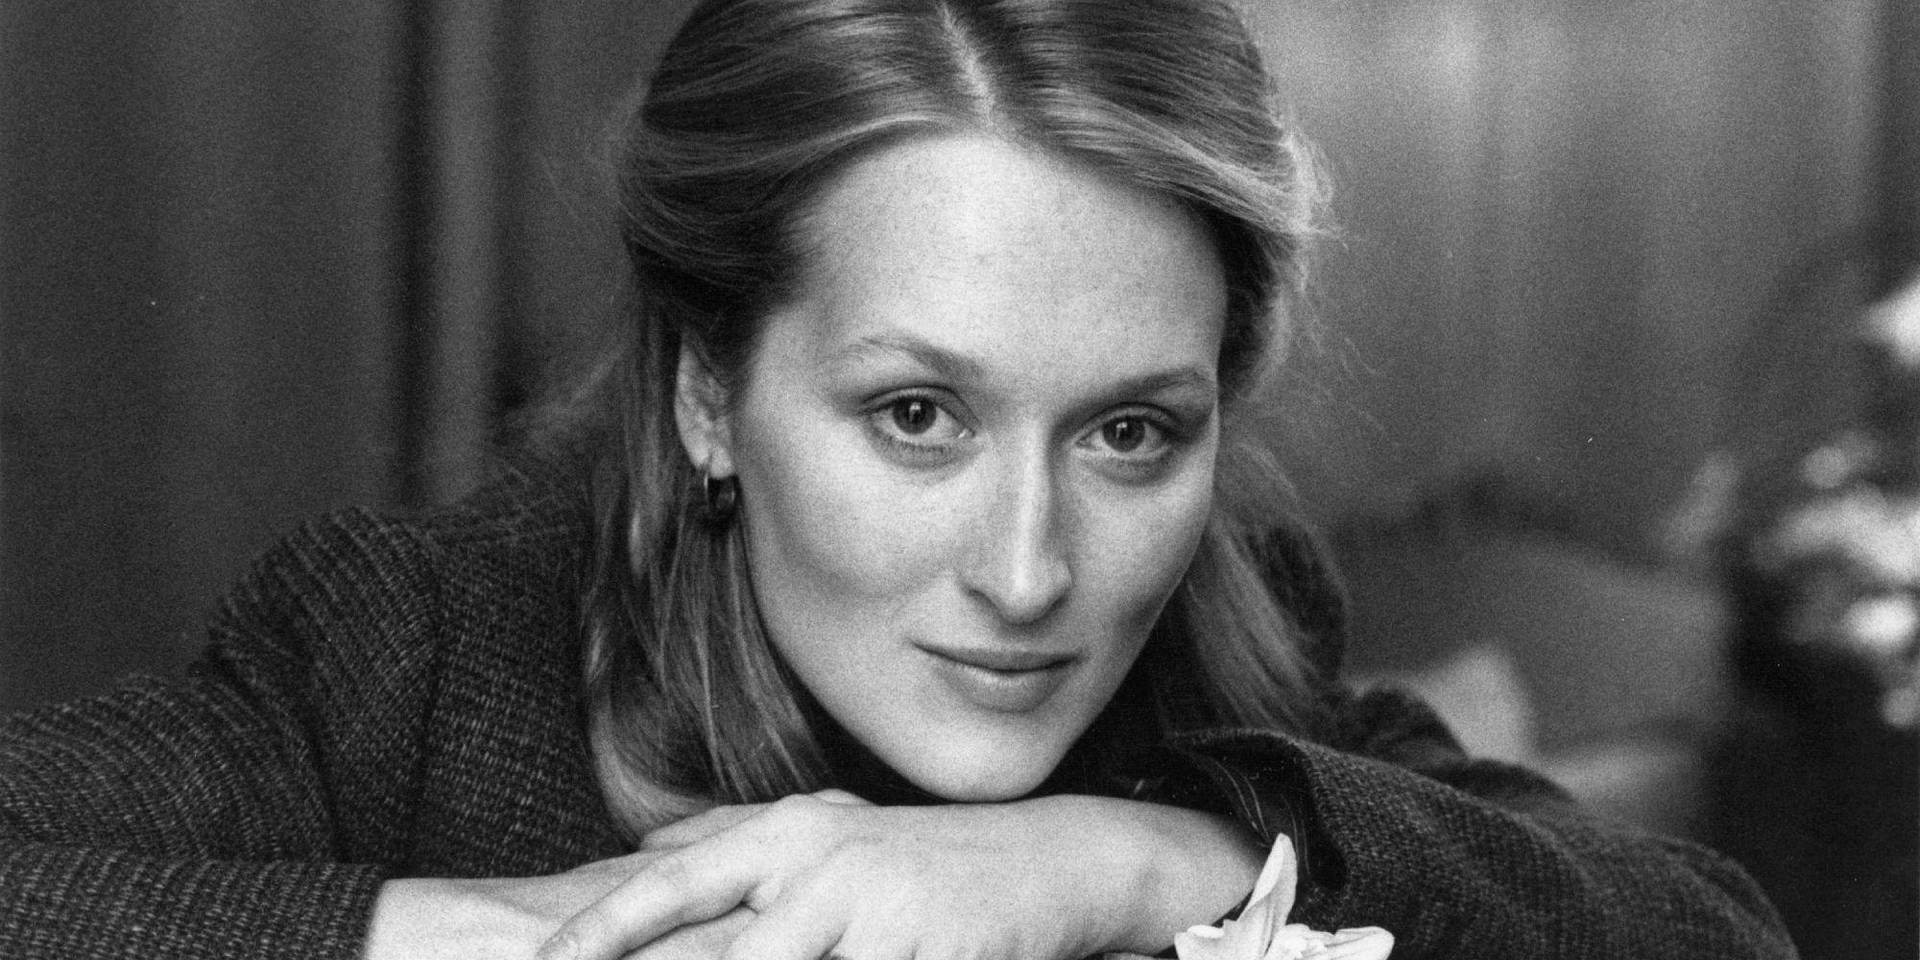 Fotode Meryl Streep Em Escala De Cinza. Papel de Parede